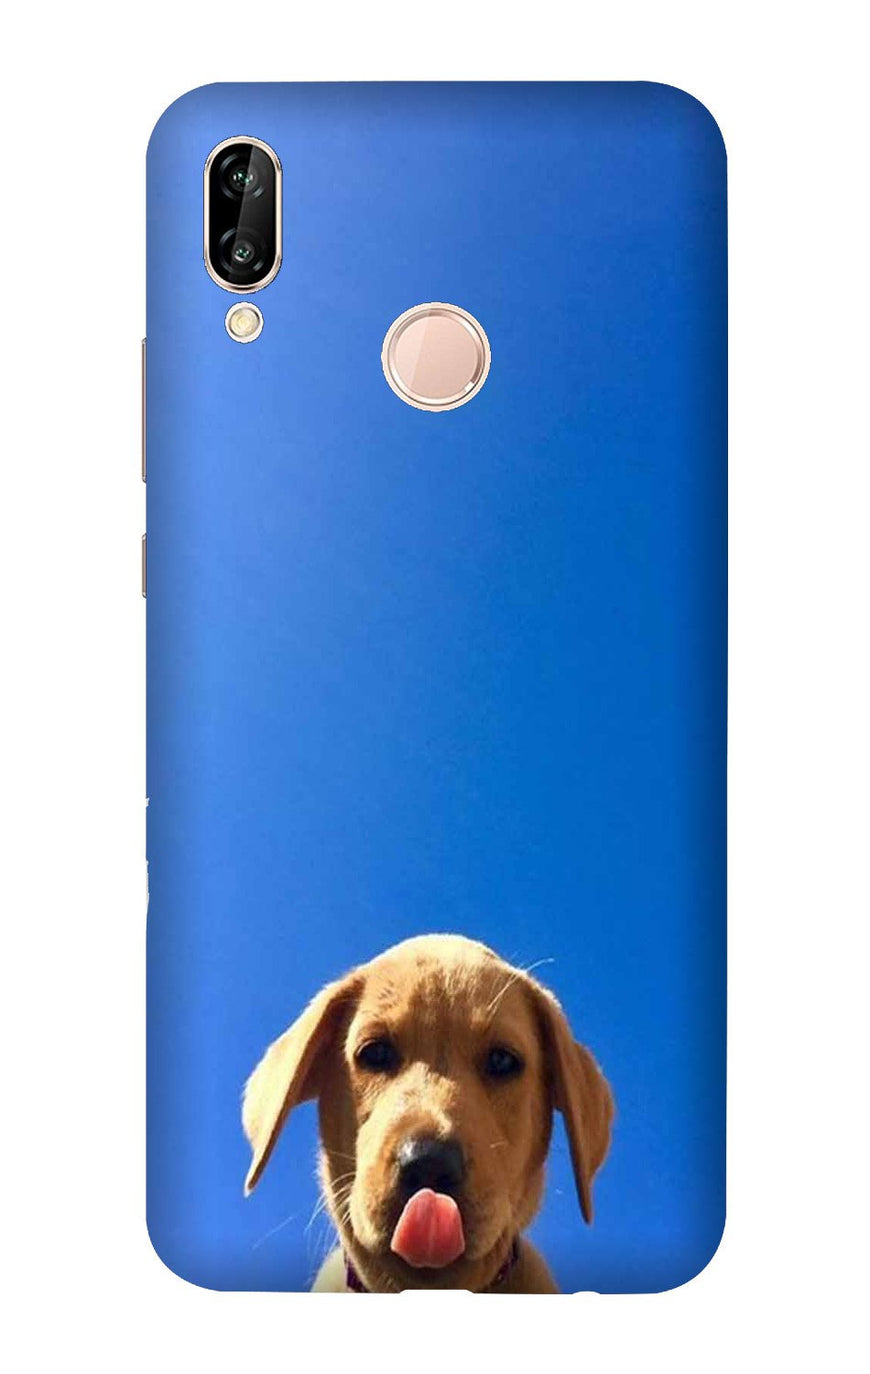 Dog Mobile Back Case for Vivo V9 Pro   (Design - 332)